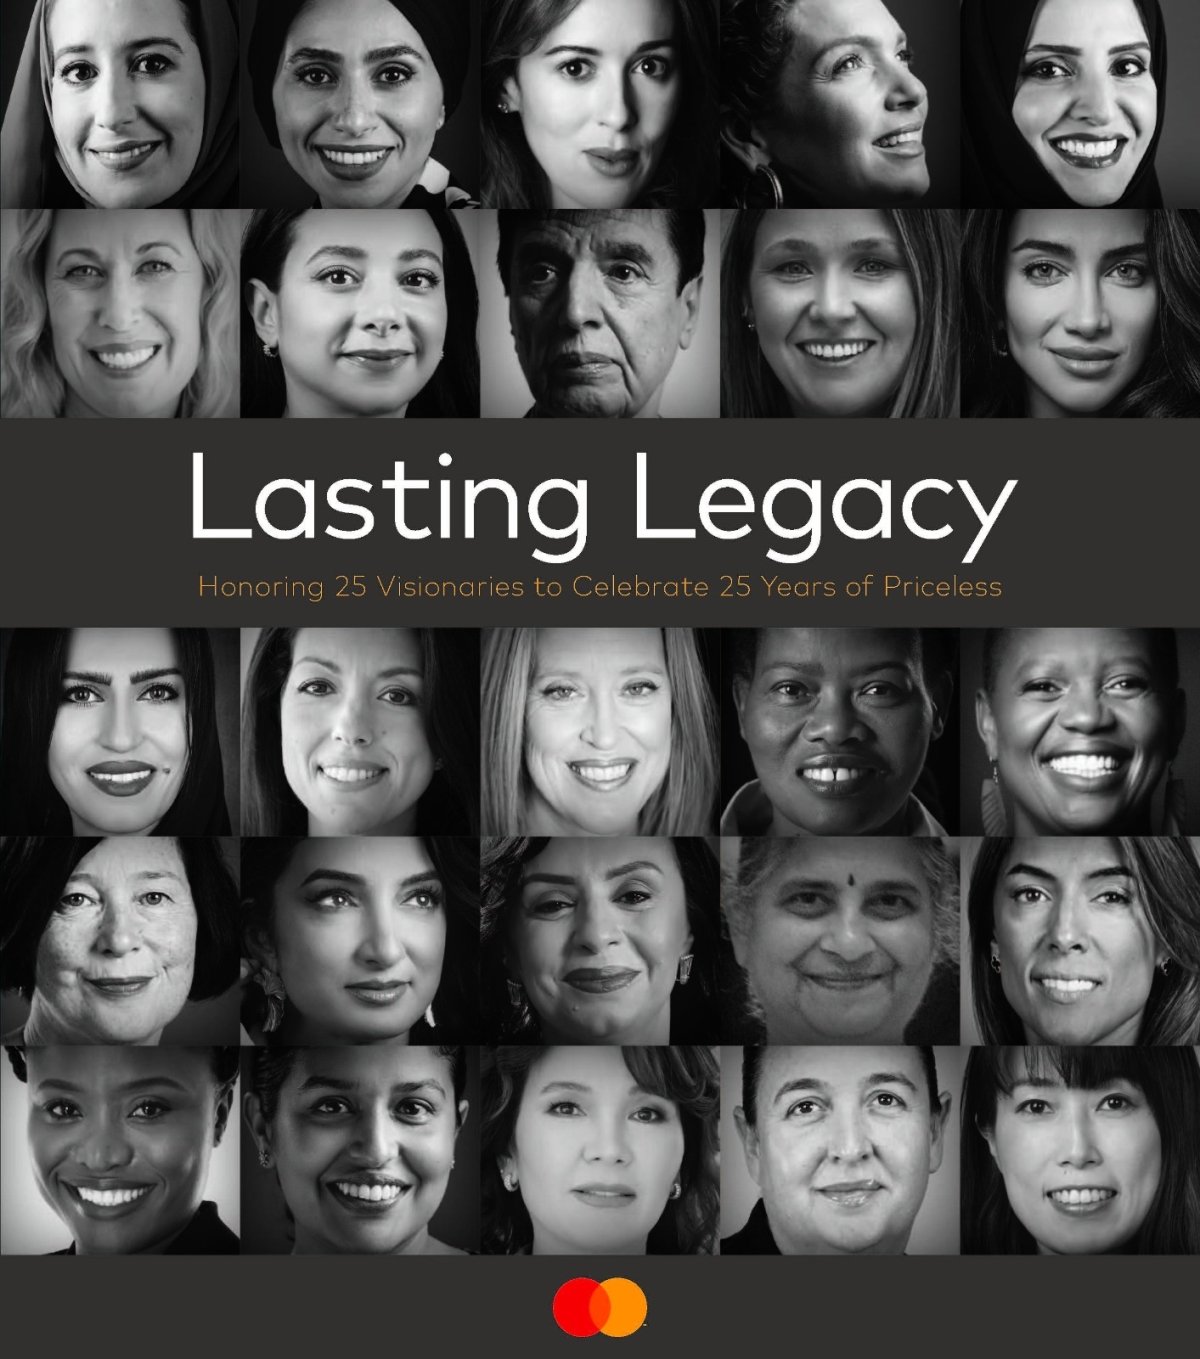 ماستركارد تطلق كتاب "Lasting Legacy" احتفاءً بـ 25 امرأة ملهمة ومسيرتهن الريادية